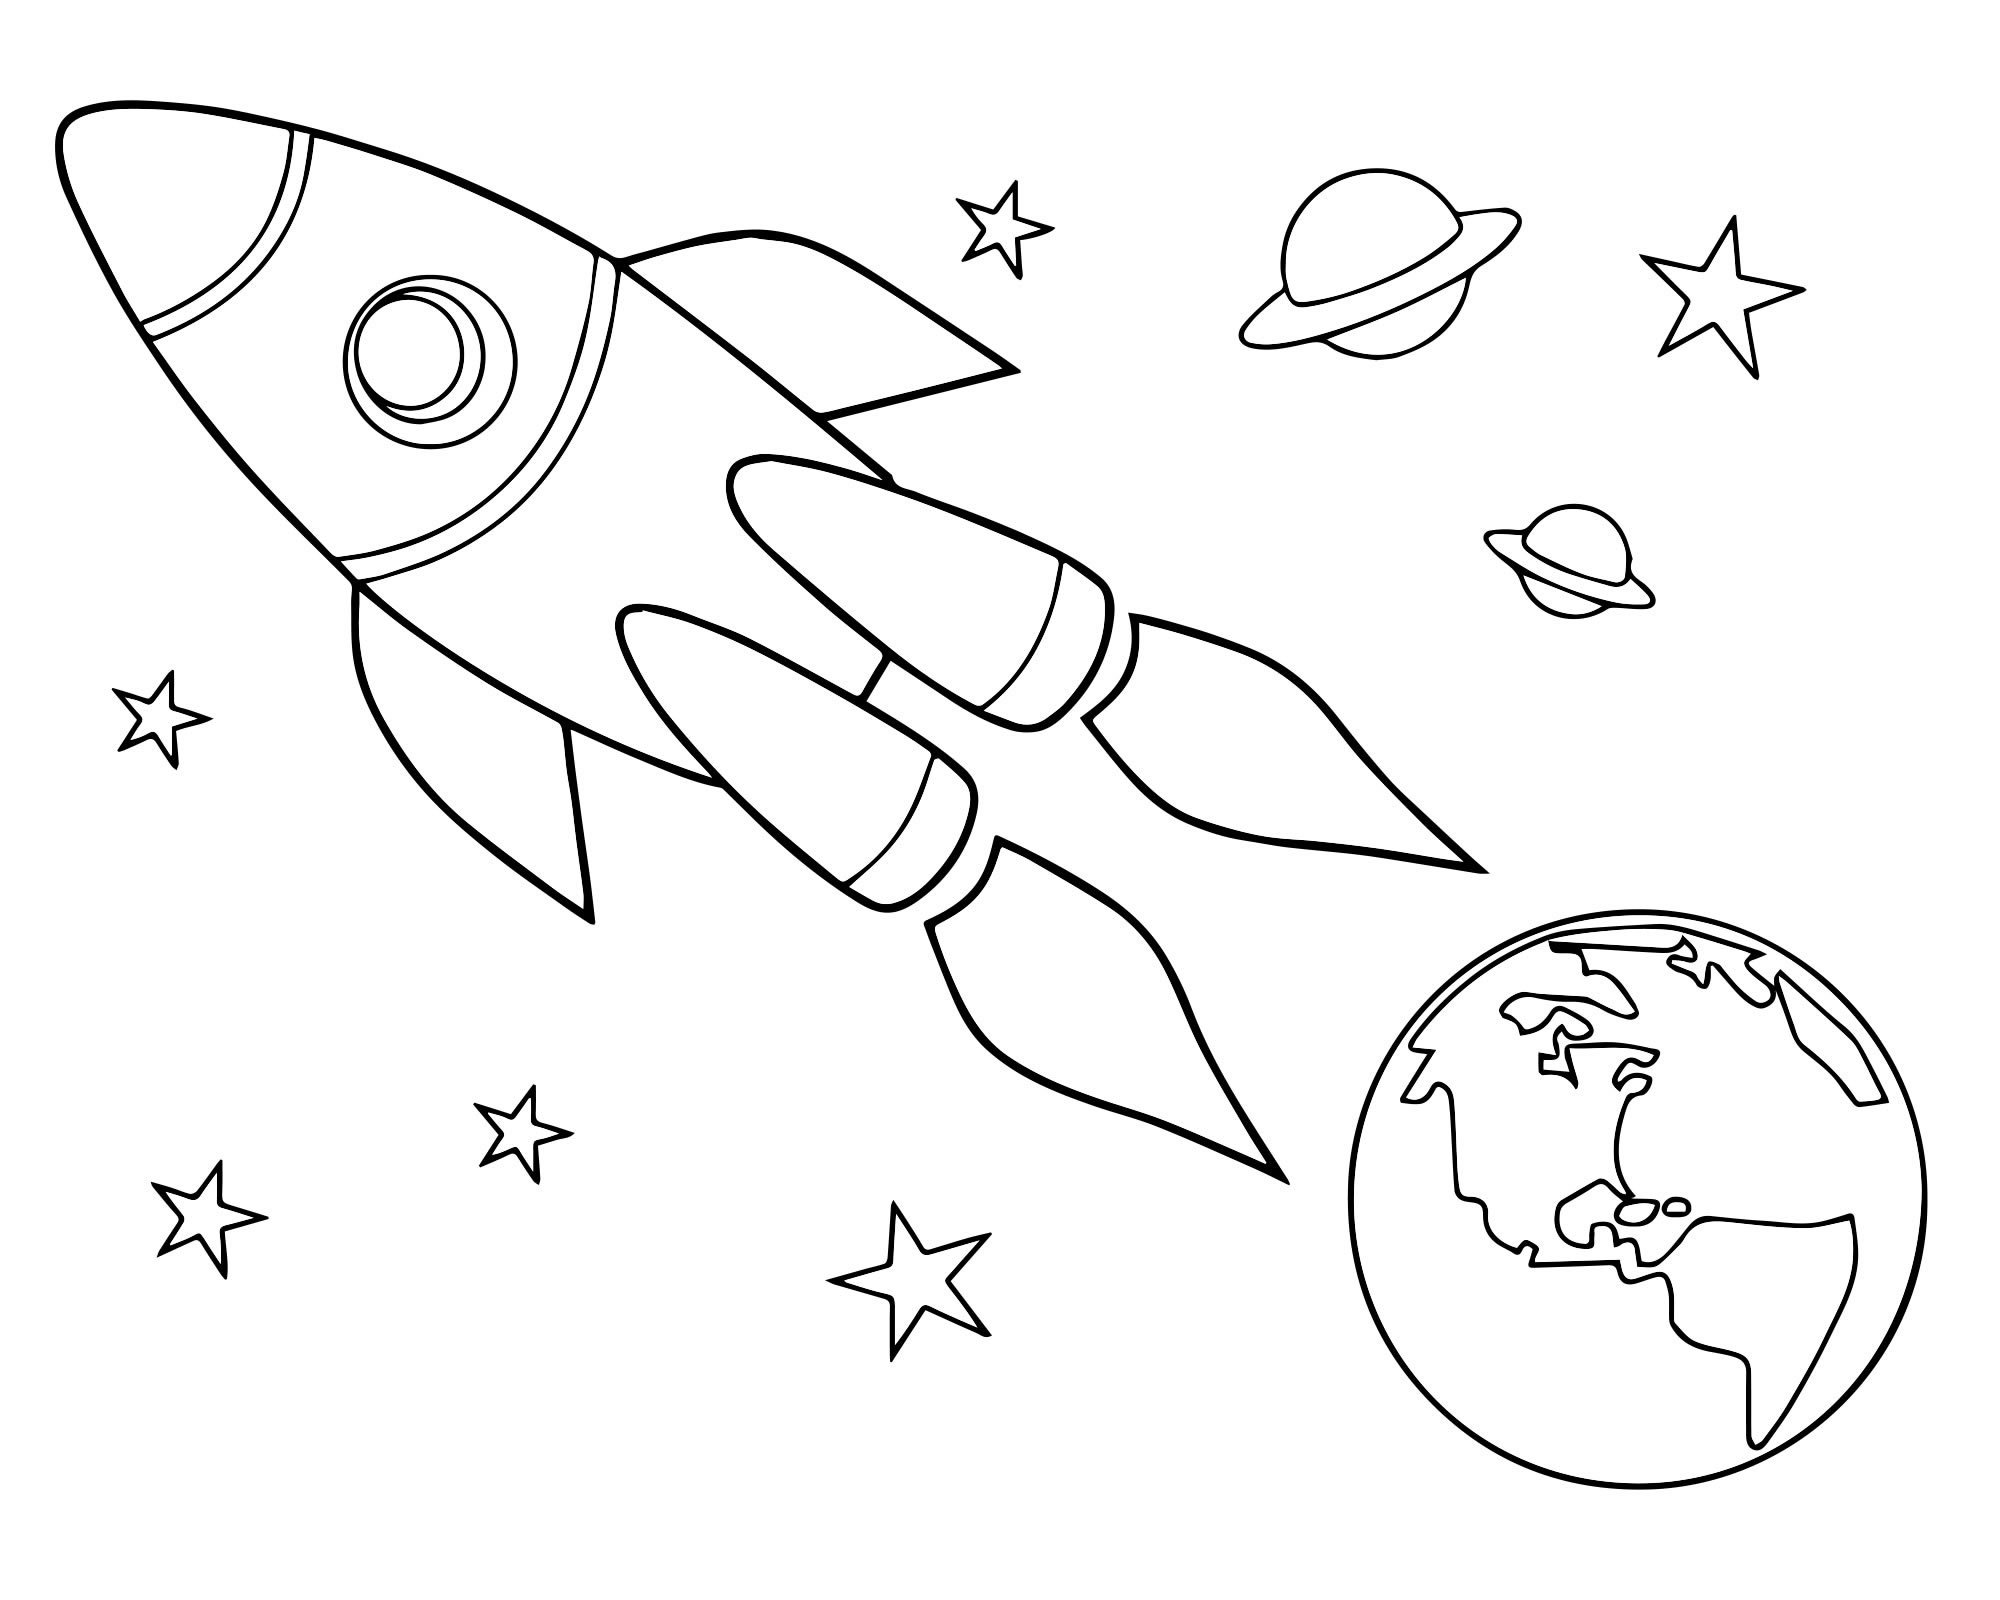 Рисунки на день космонавтики легкие для срисовки. Космос раскраска для детей. Раскраска день космонавтики для детей. Трафареты на тему космоса для детей. Раскраска для малышей. Космос.